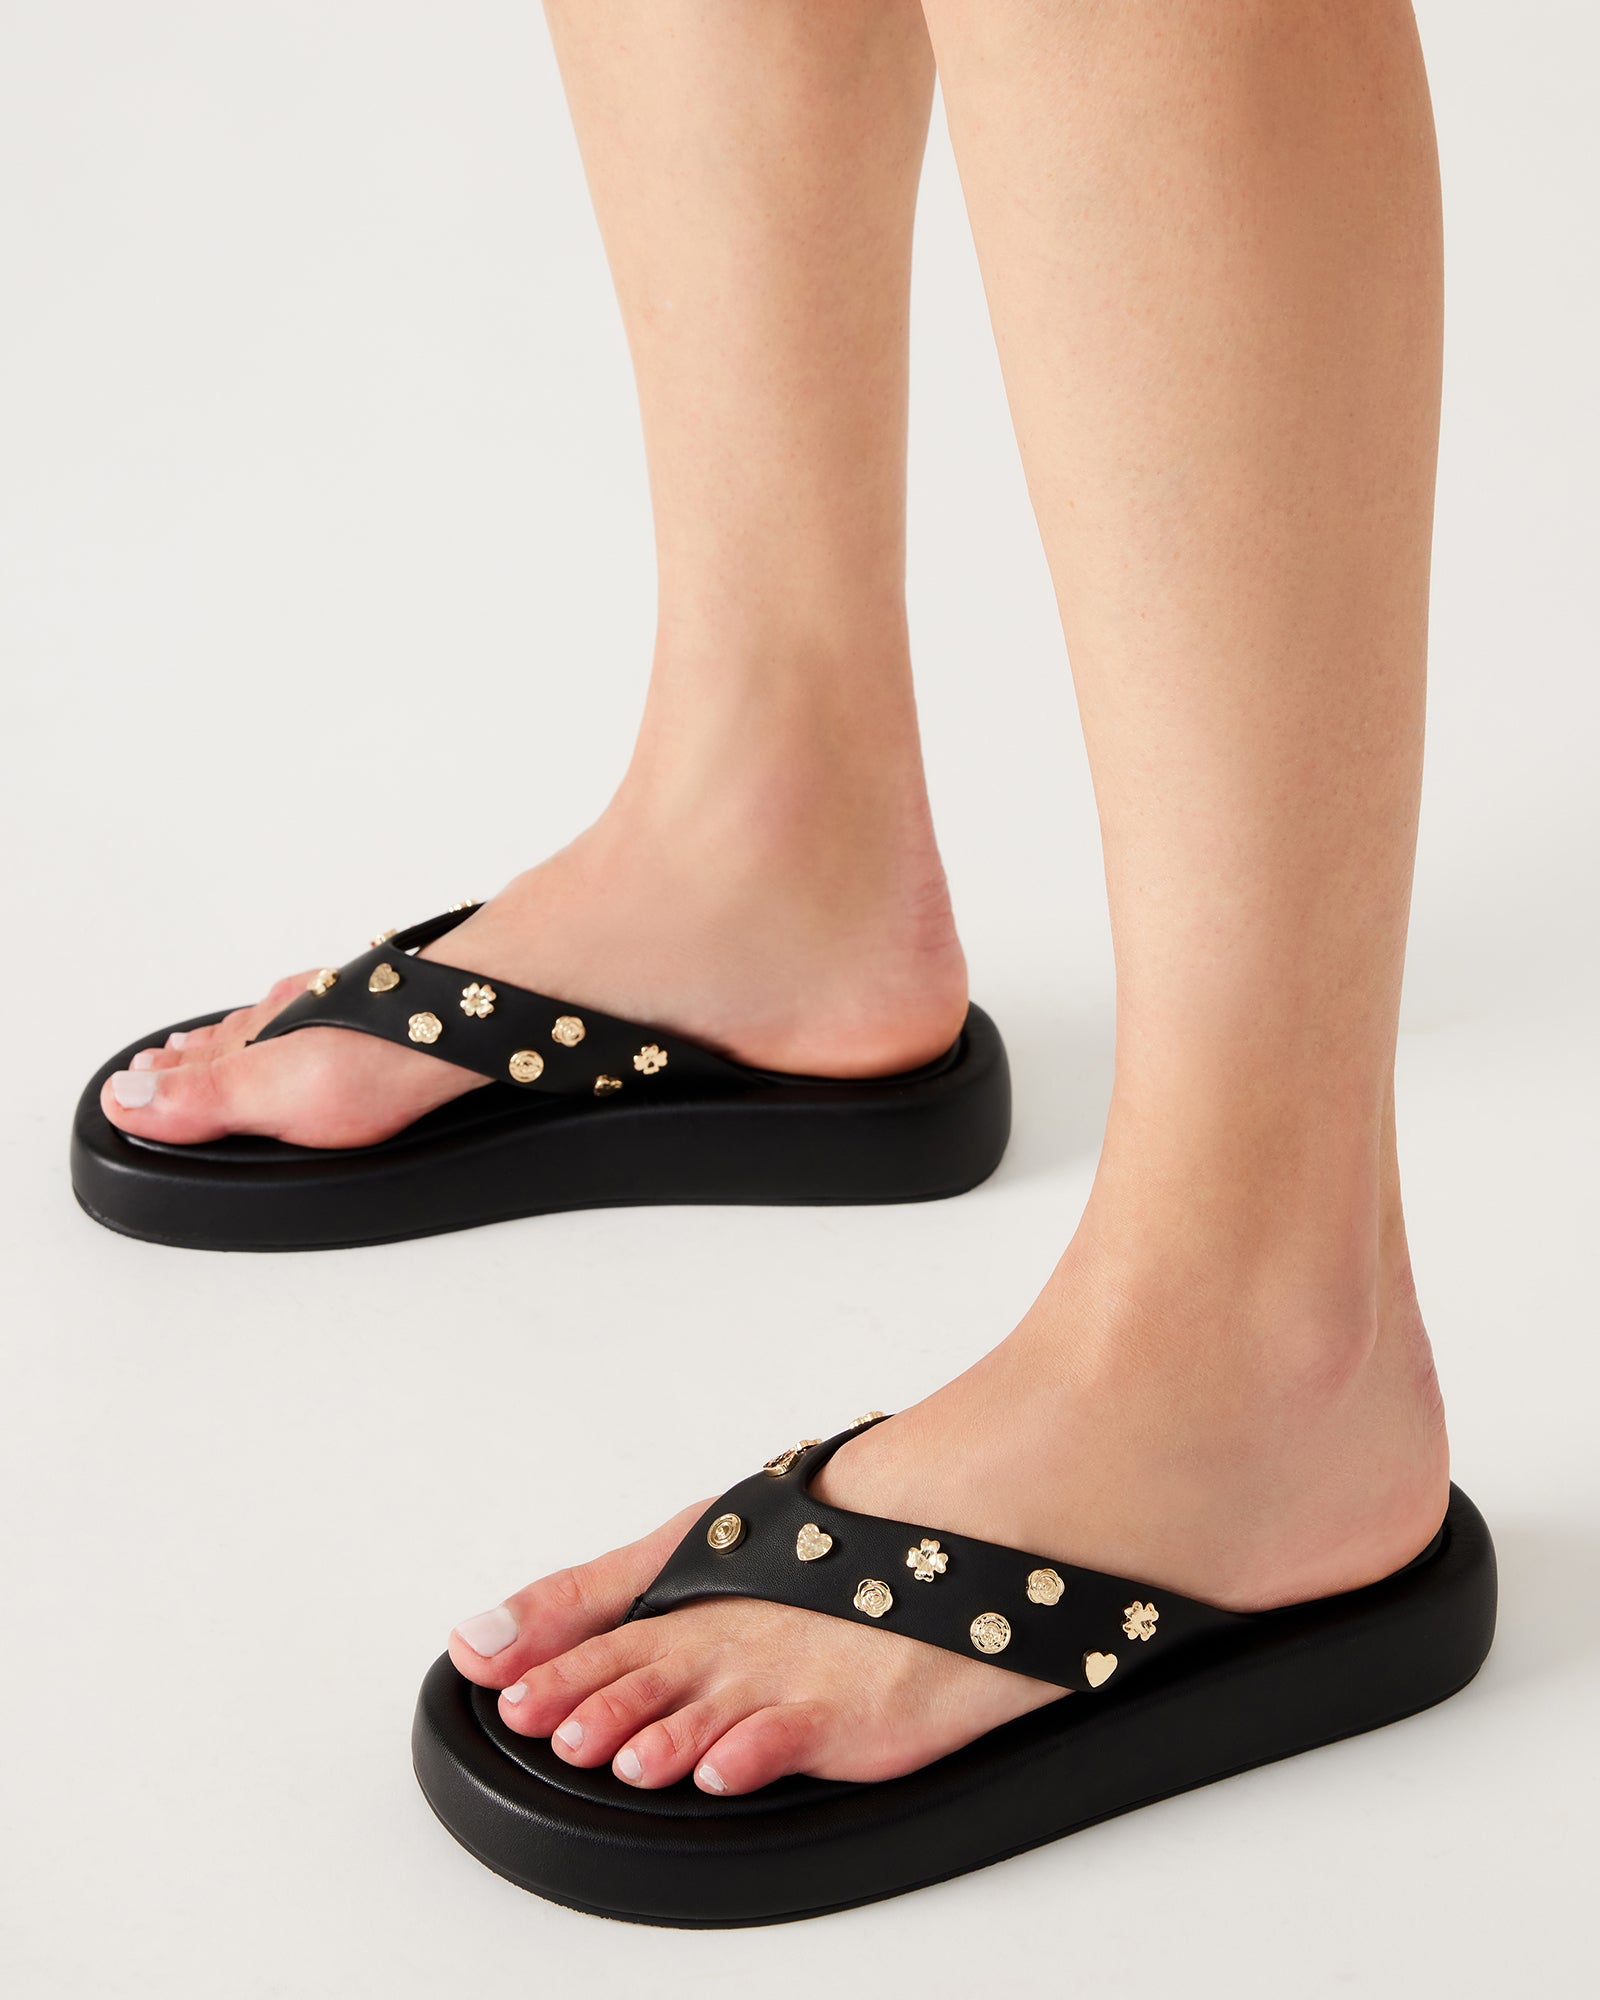 KYLEN Charms Black Leather Thong Slide Sandal | Women's Sandals – Steve ...